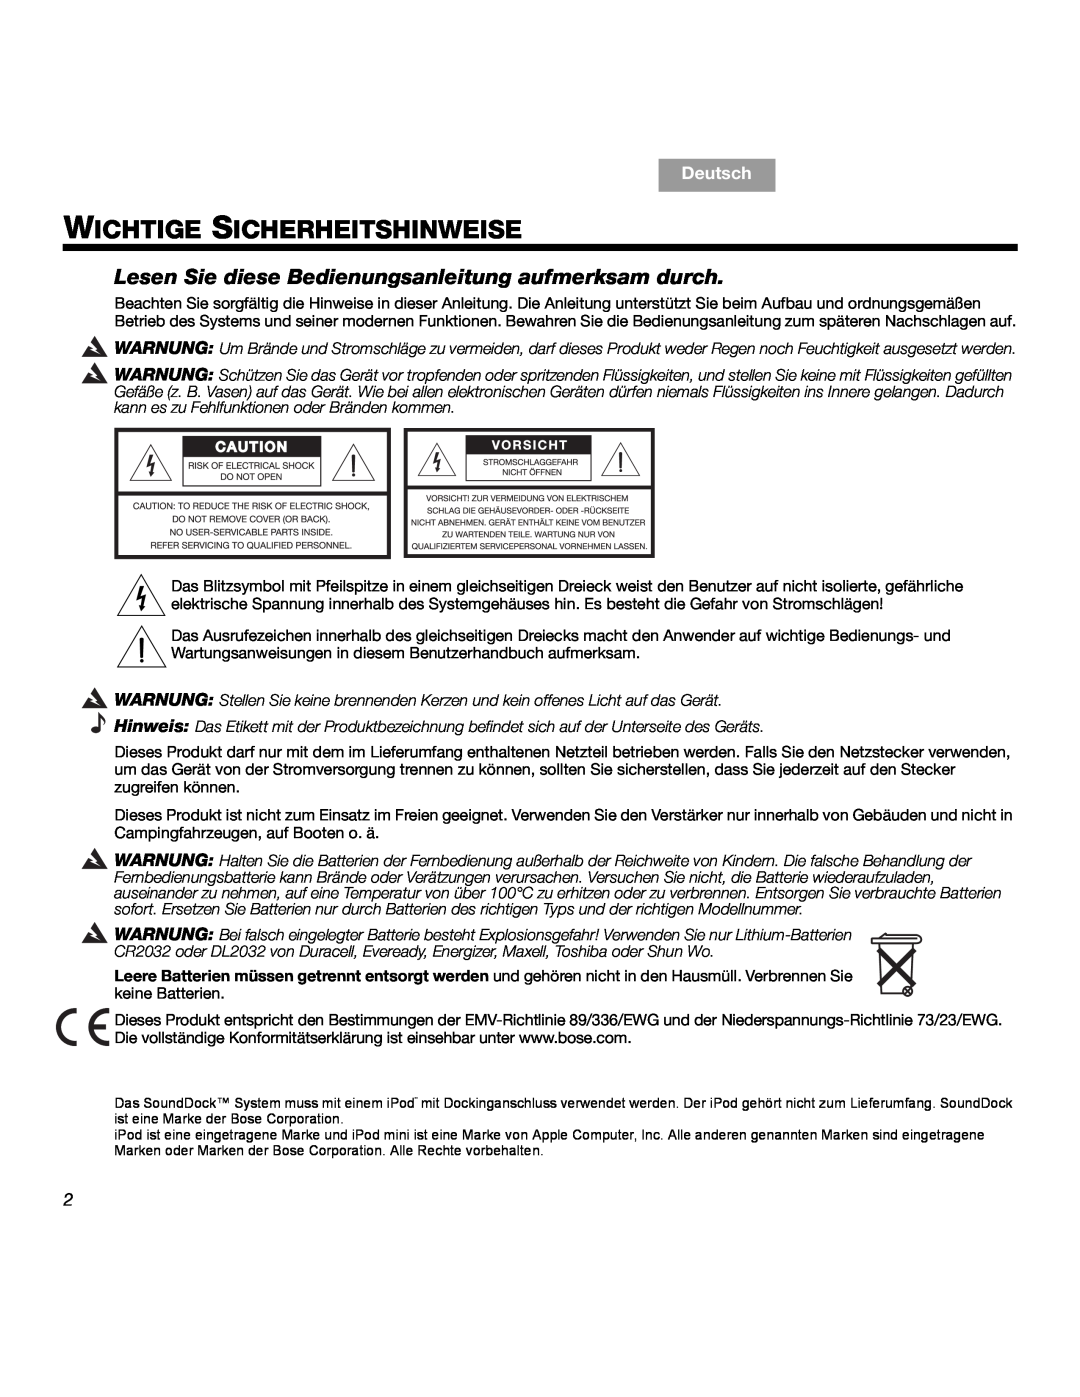 Bose SOUNDDOCKTM manual Wichtige Sicherheitshinweise, Deutsch 